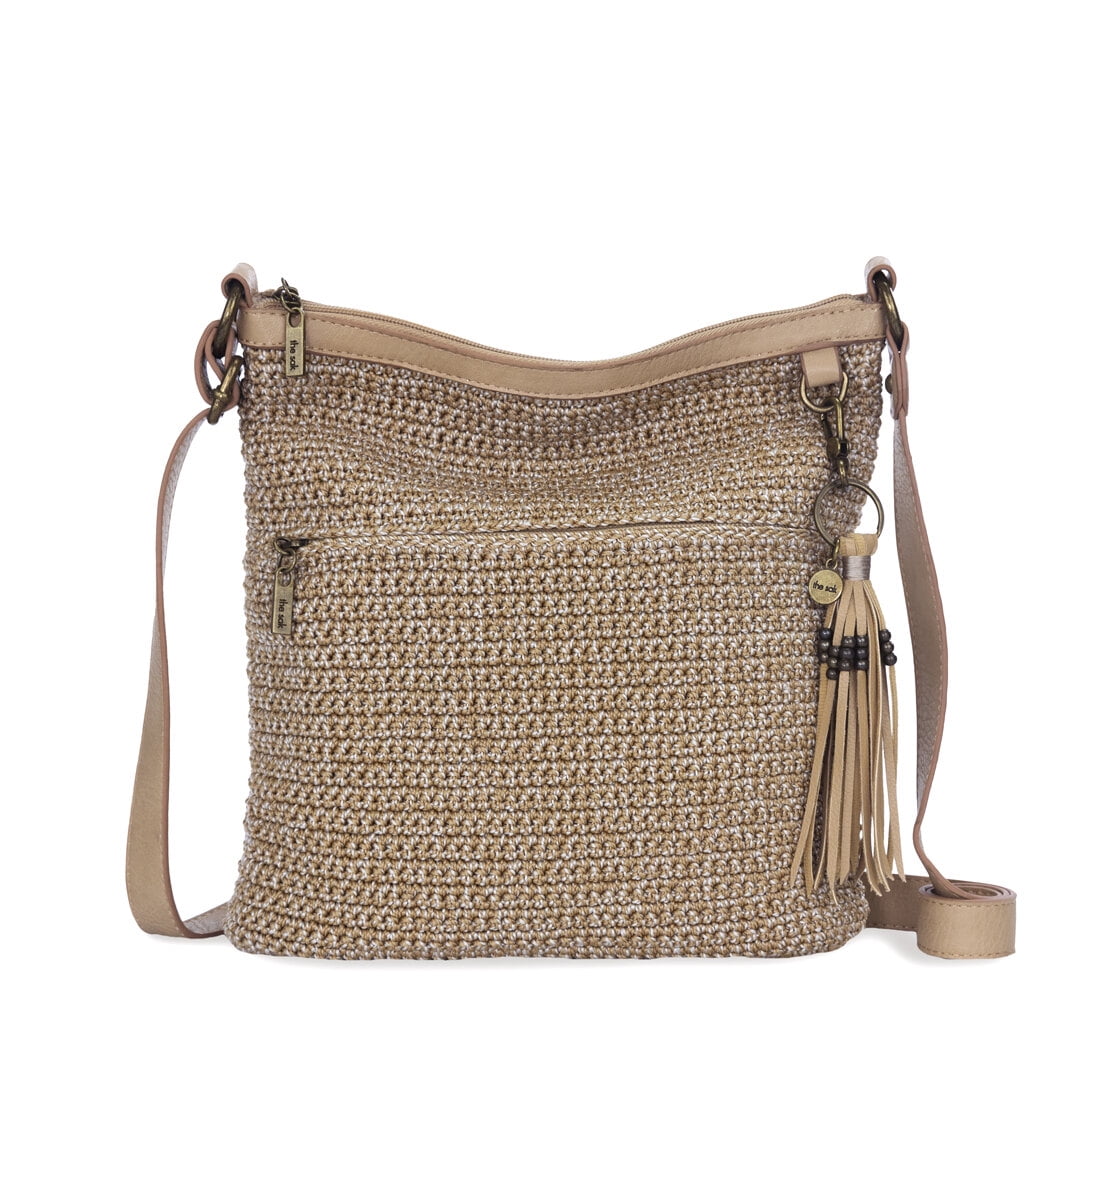 The Sak Crochet Knit Shoulder Bag Gold Tan Beige Purse Handbag | eBay